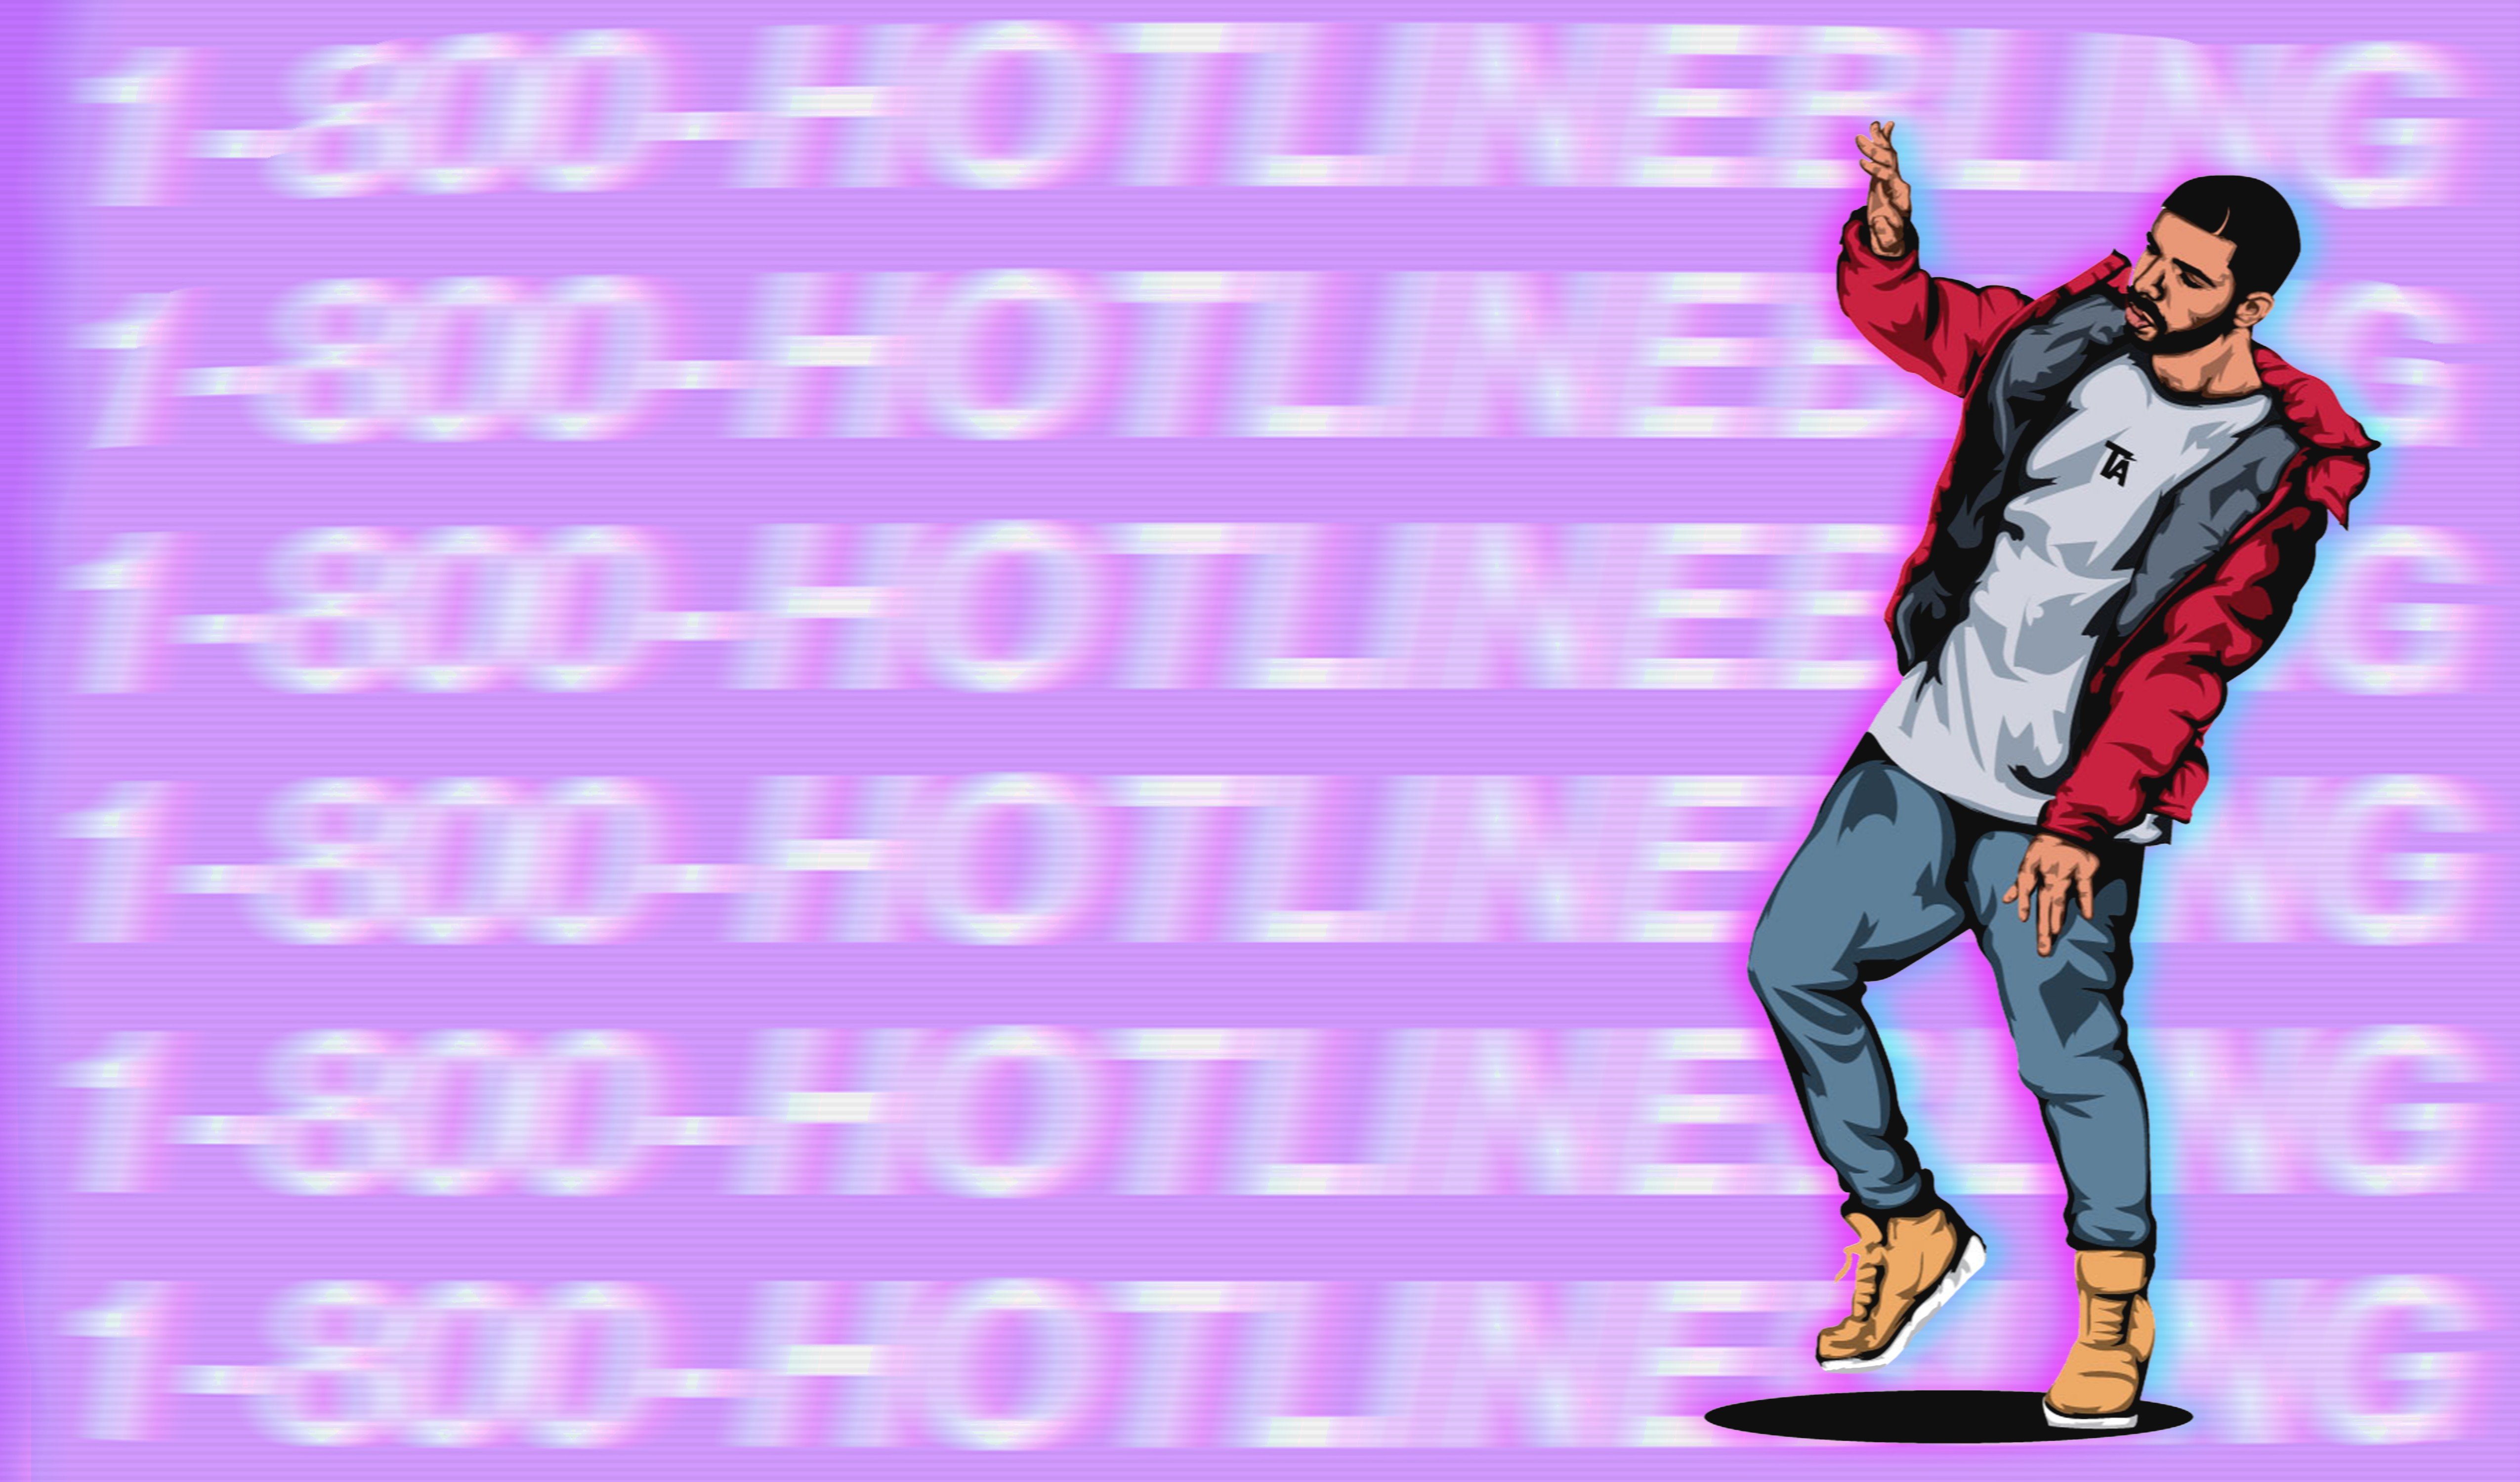 hotline bling, Pink color, Digital art Wallpaper